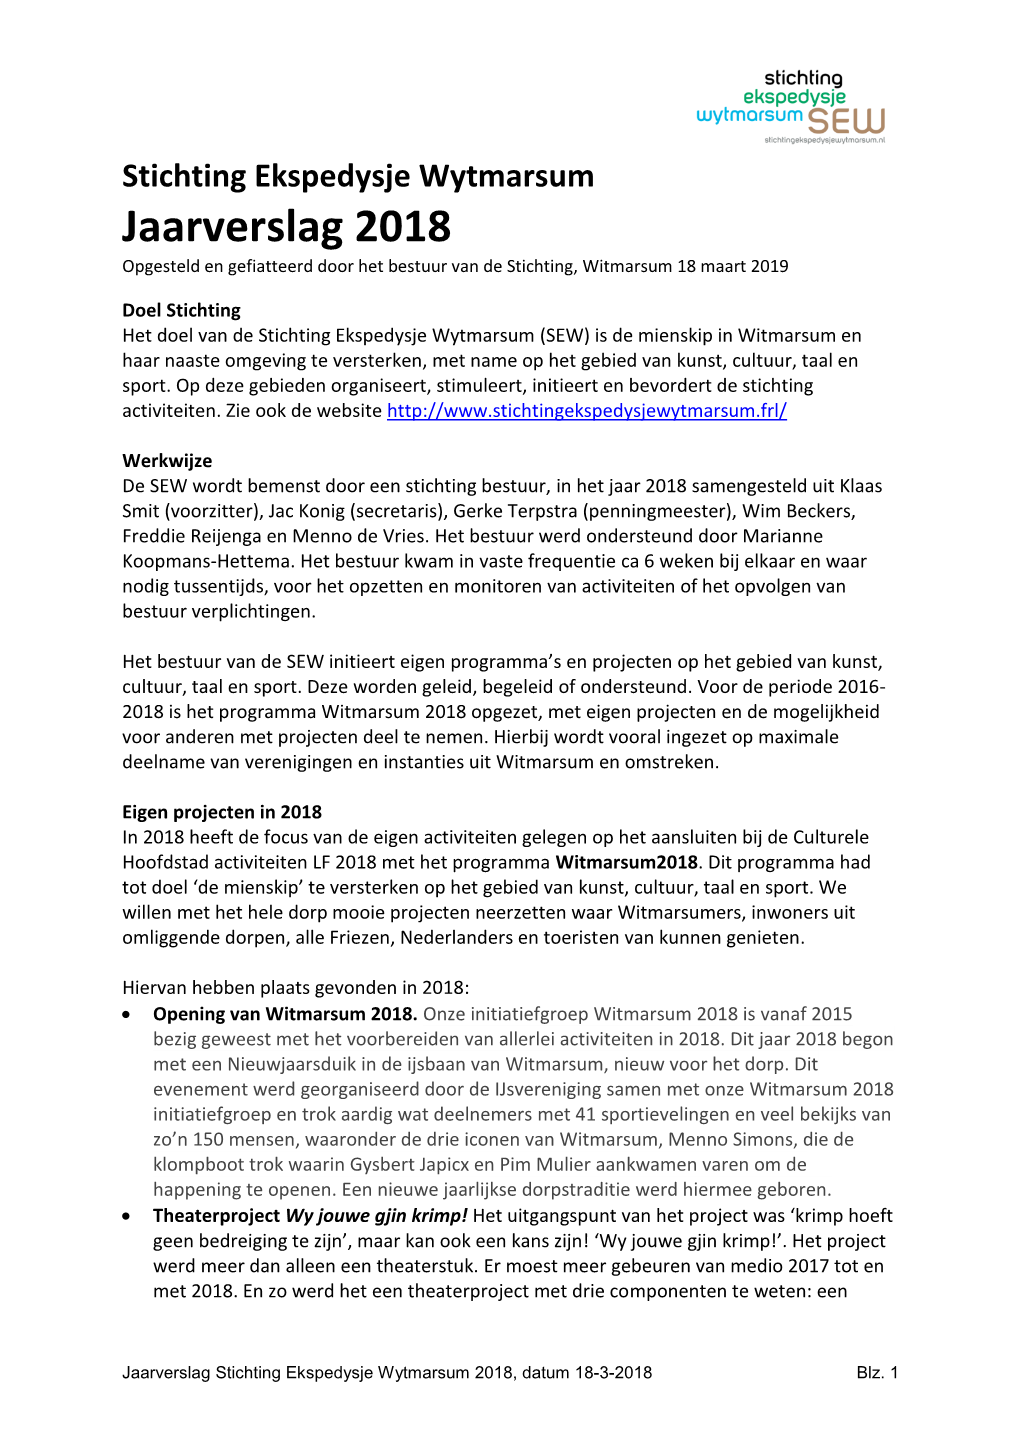 Stichting Ekspedysje Wytmarsum Jaarverslag 2018 Opgesteld En Gefiatteerd Door Het Bestuur Van De Stichting, Witmarsum 18 Maart 2019